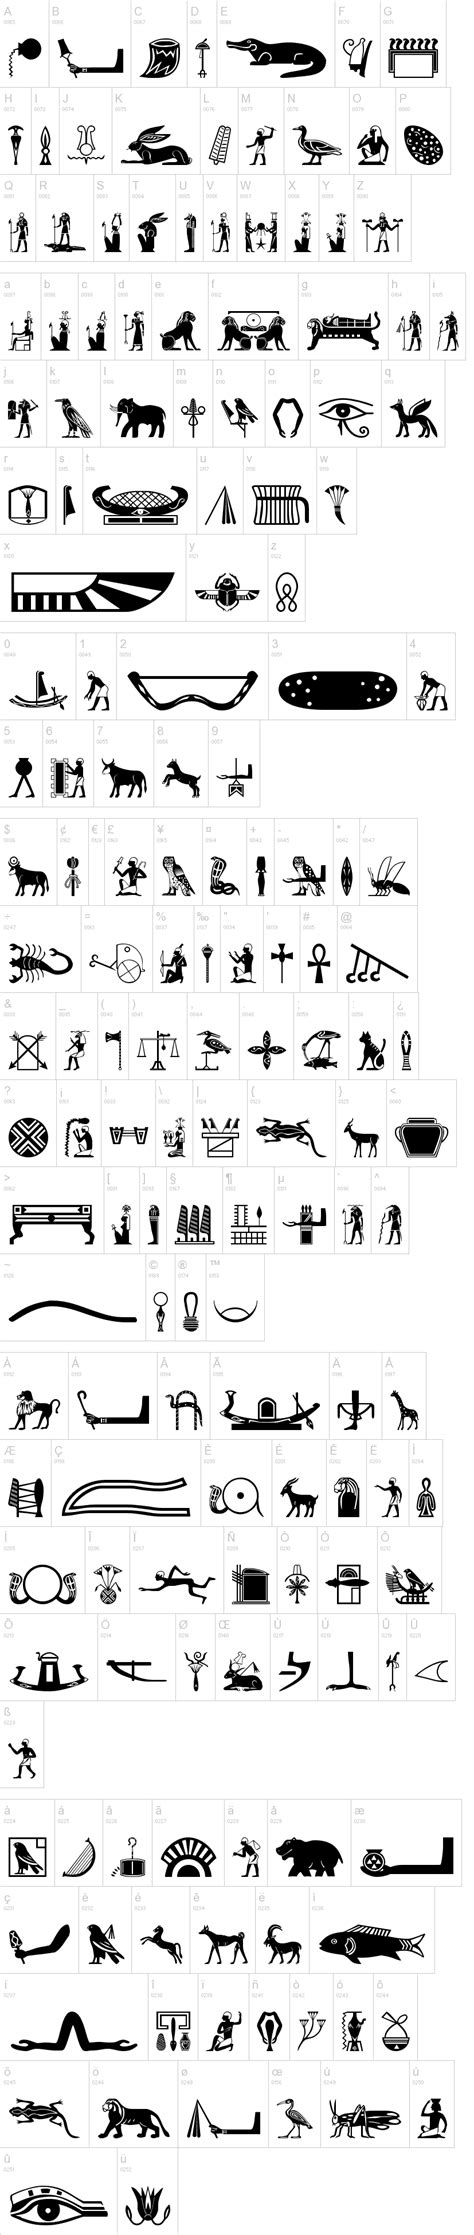 Old Egypt Glyphs Font